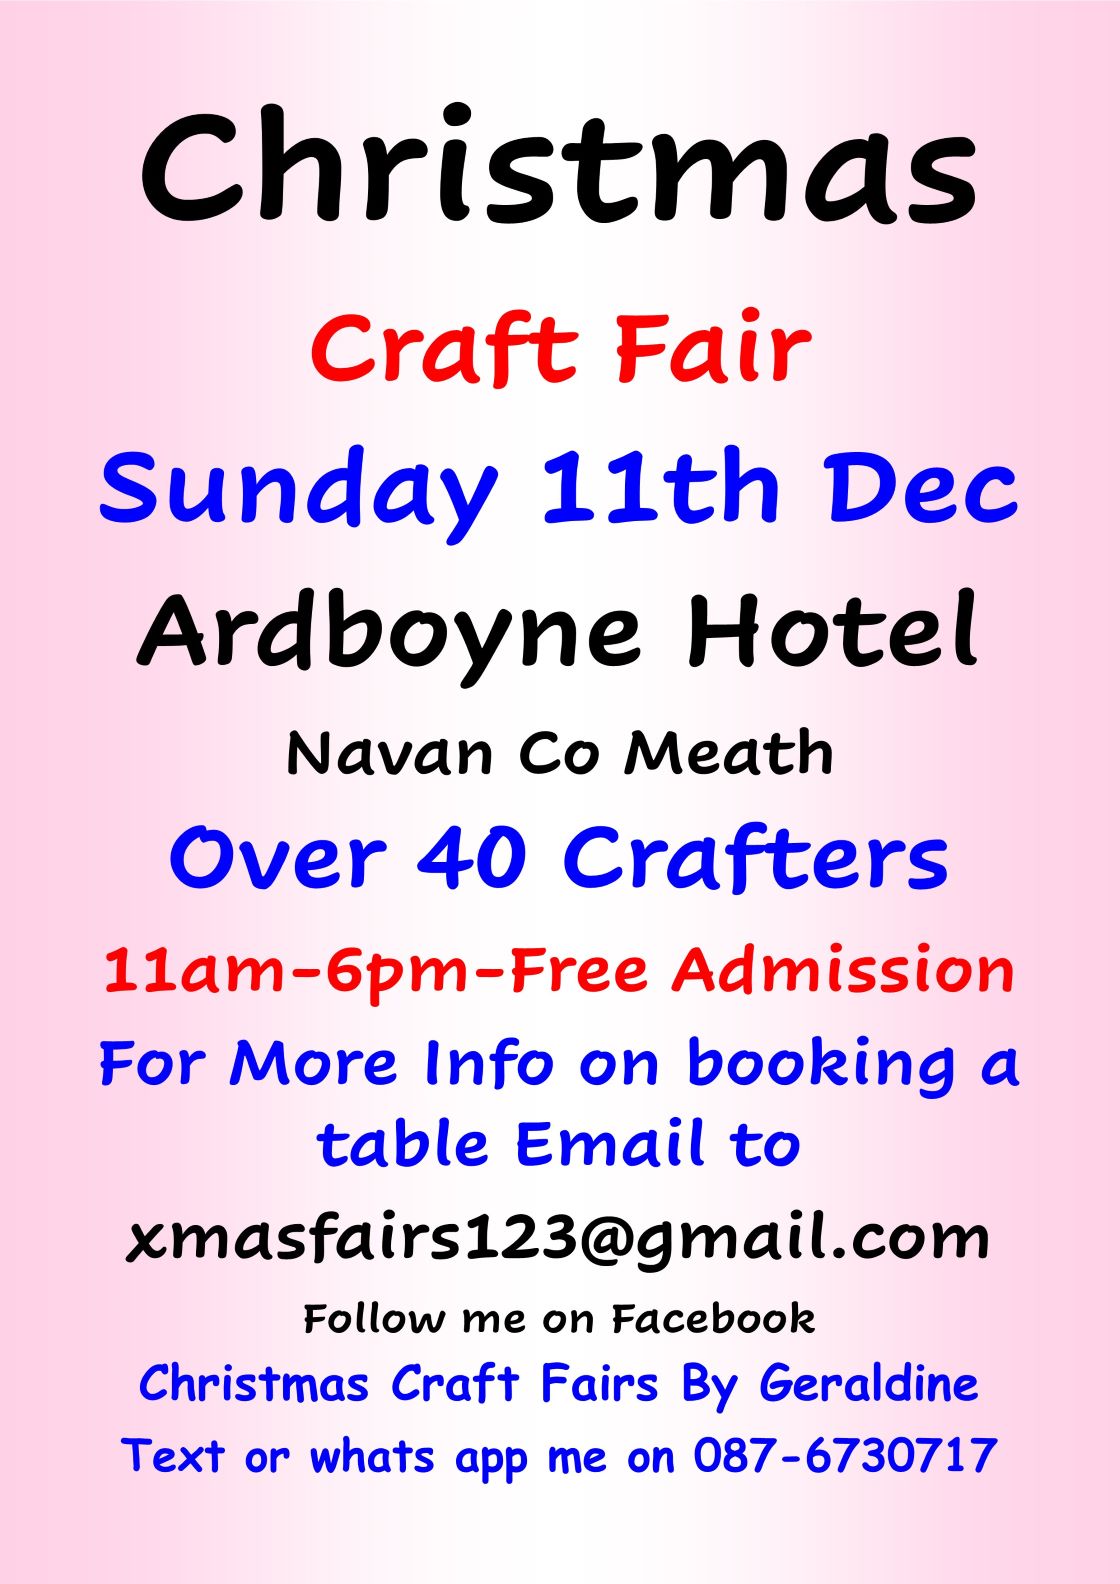 Ardboyne Hotel Christmas Craft Fair